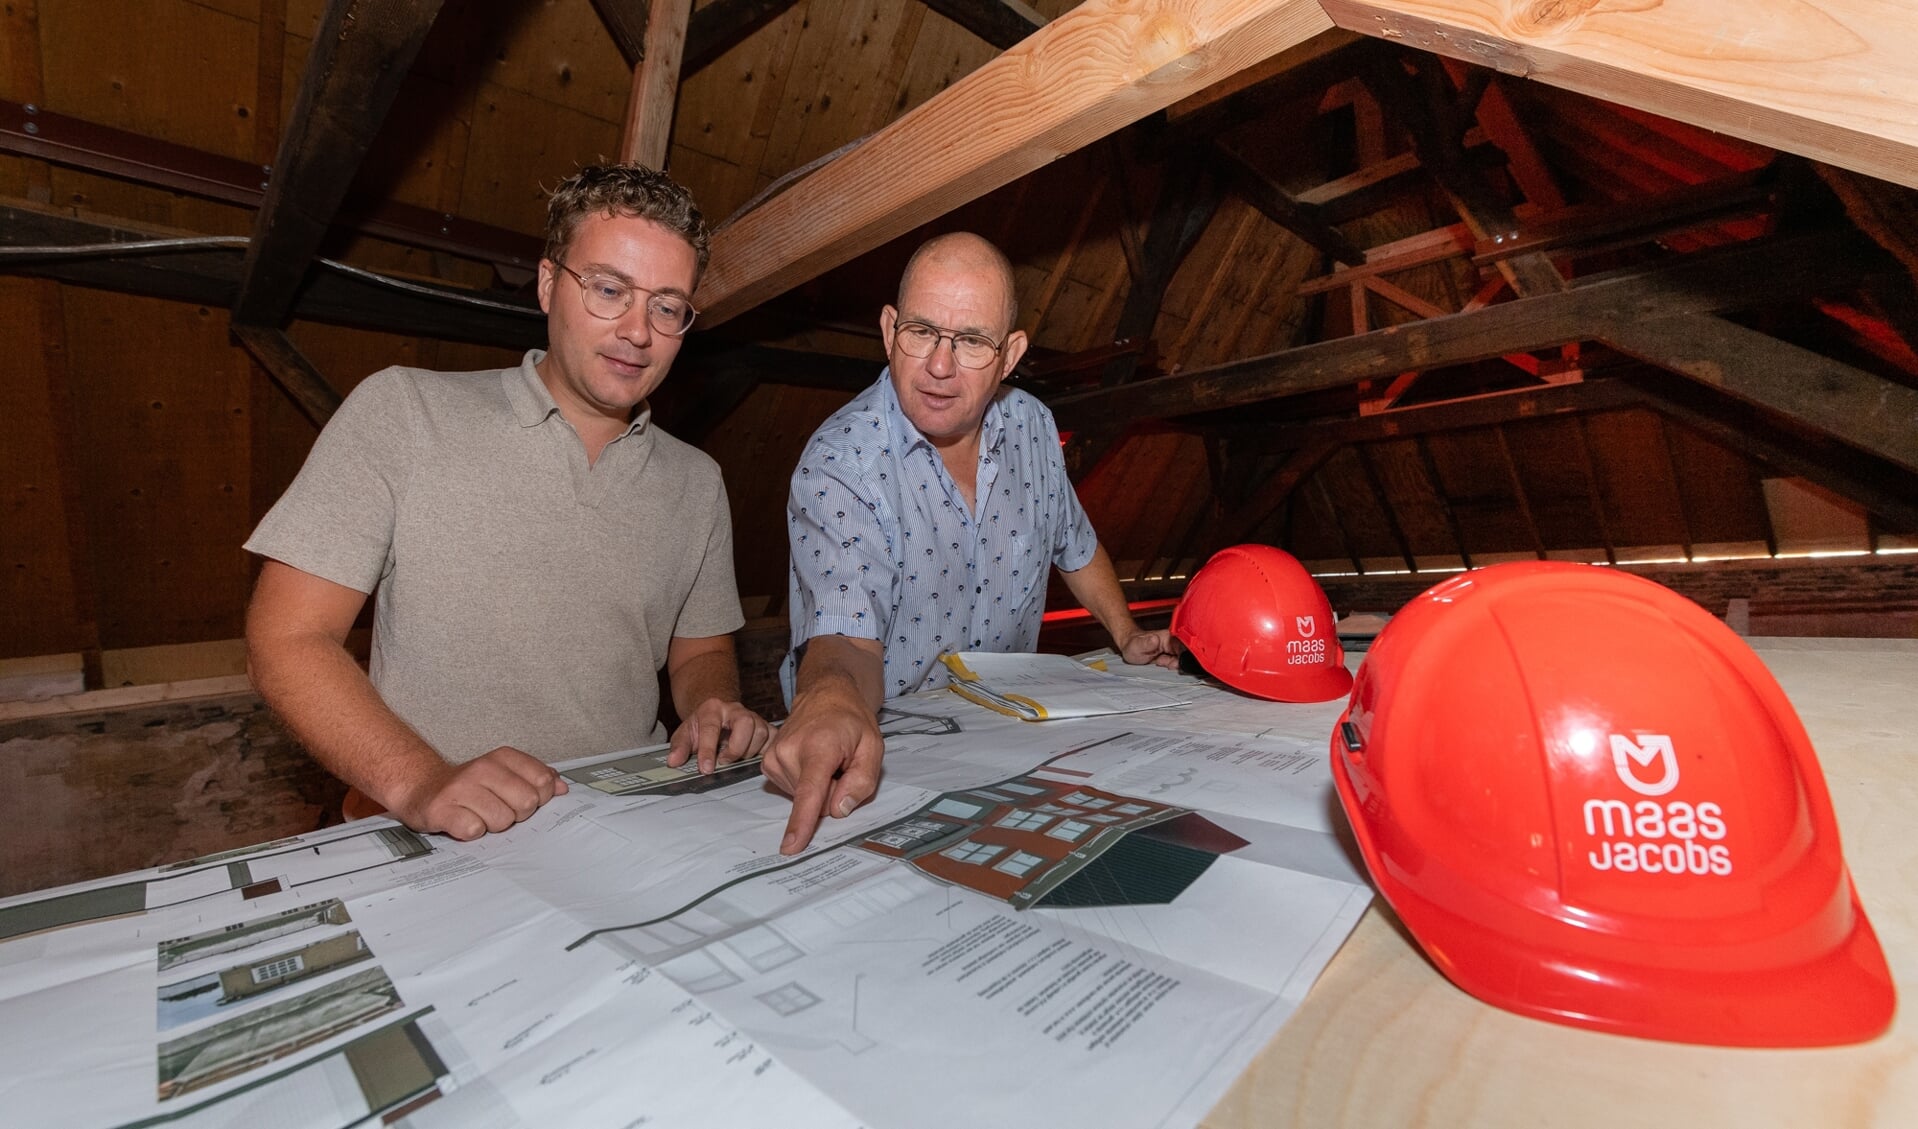 Projectcoördinator Stijn Kleemans (links) en bedrijfsleider Ben van den Maagdenberg.